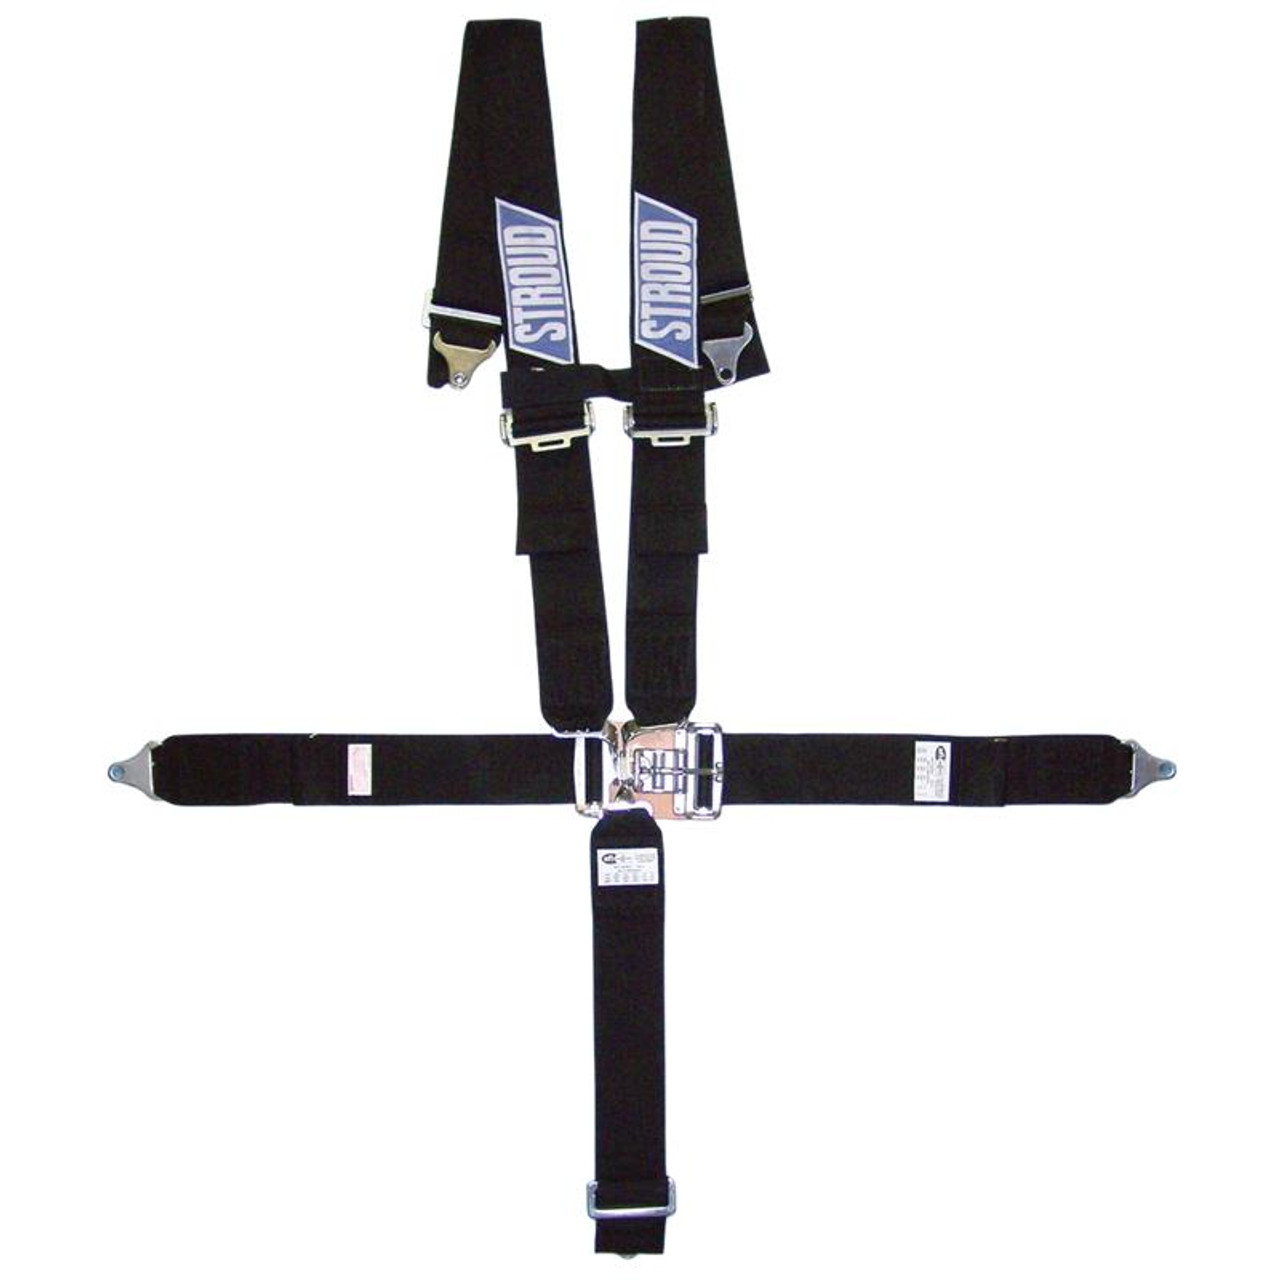 2pt Black Airplane Buckle Lap Seat Belts w/ Anchor Plate Hardware Pack  SafTboy - Conseil scolaire francophone de Terre-Neuve et Labrador